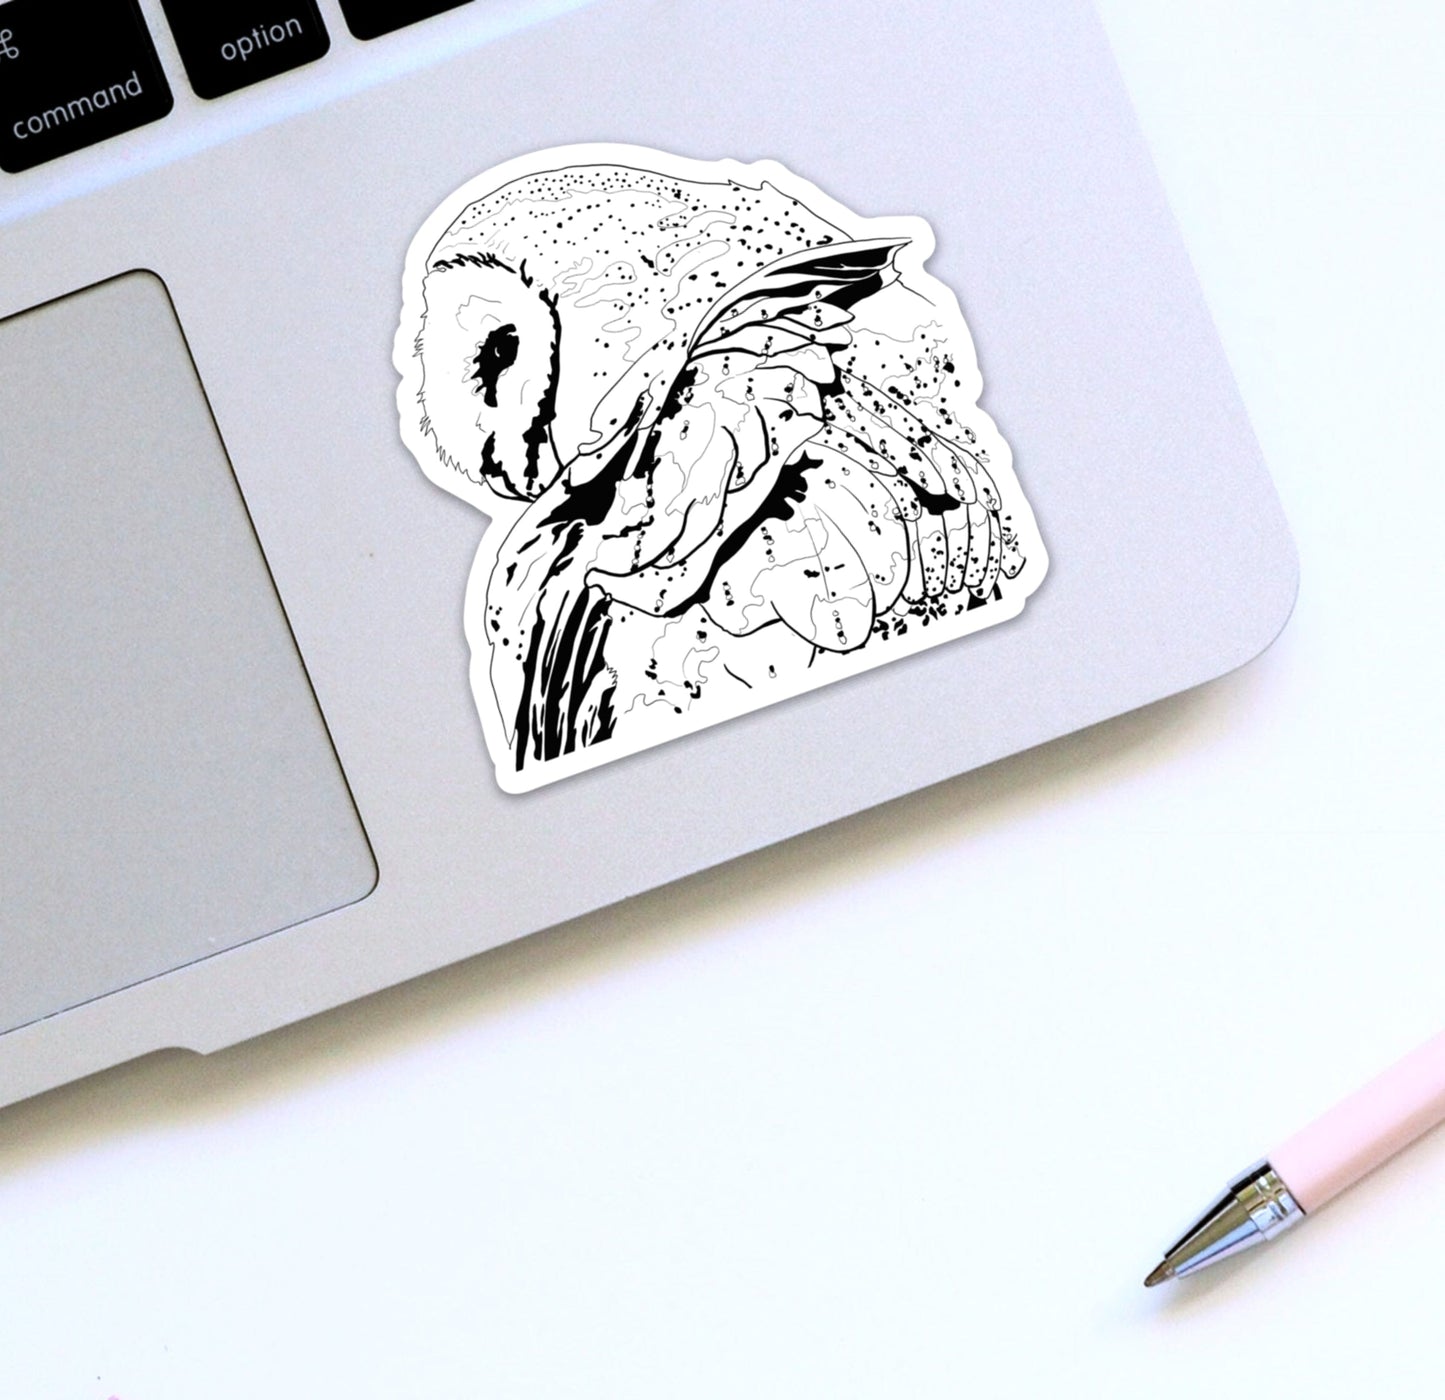 PinkPolish Design Stickers "Constellation Owl" Die Cut Vinyl Sticker